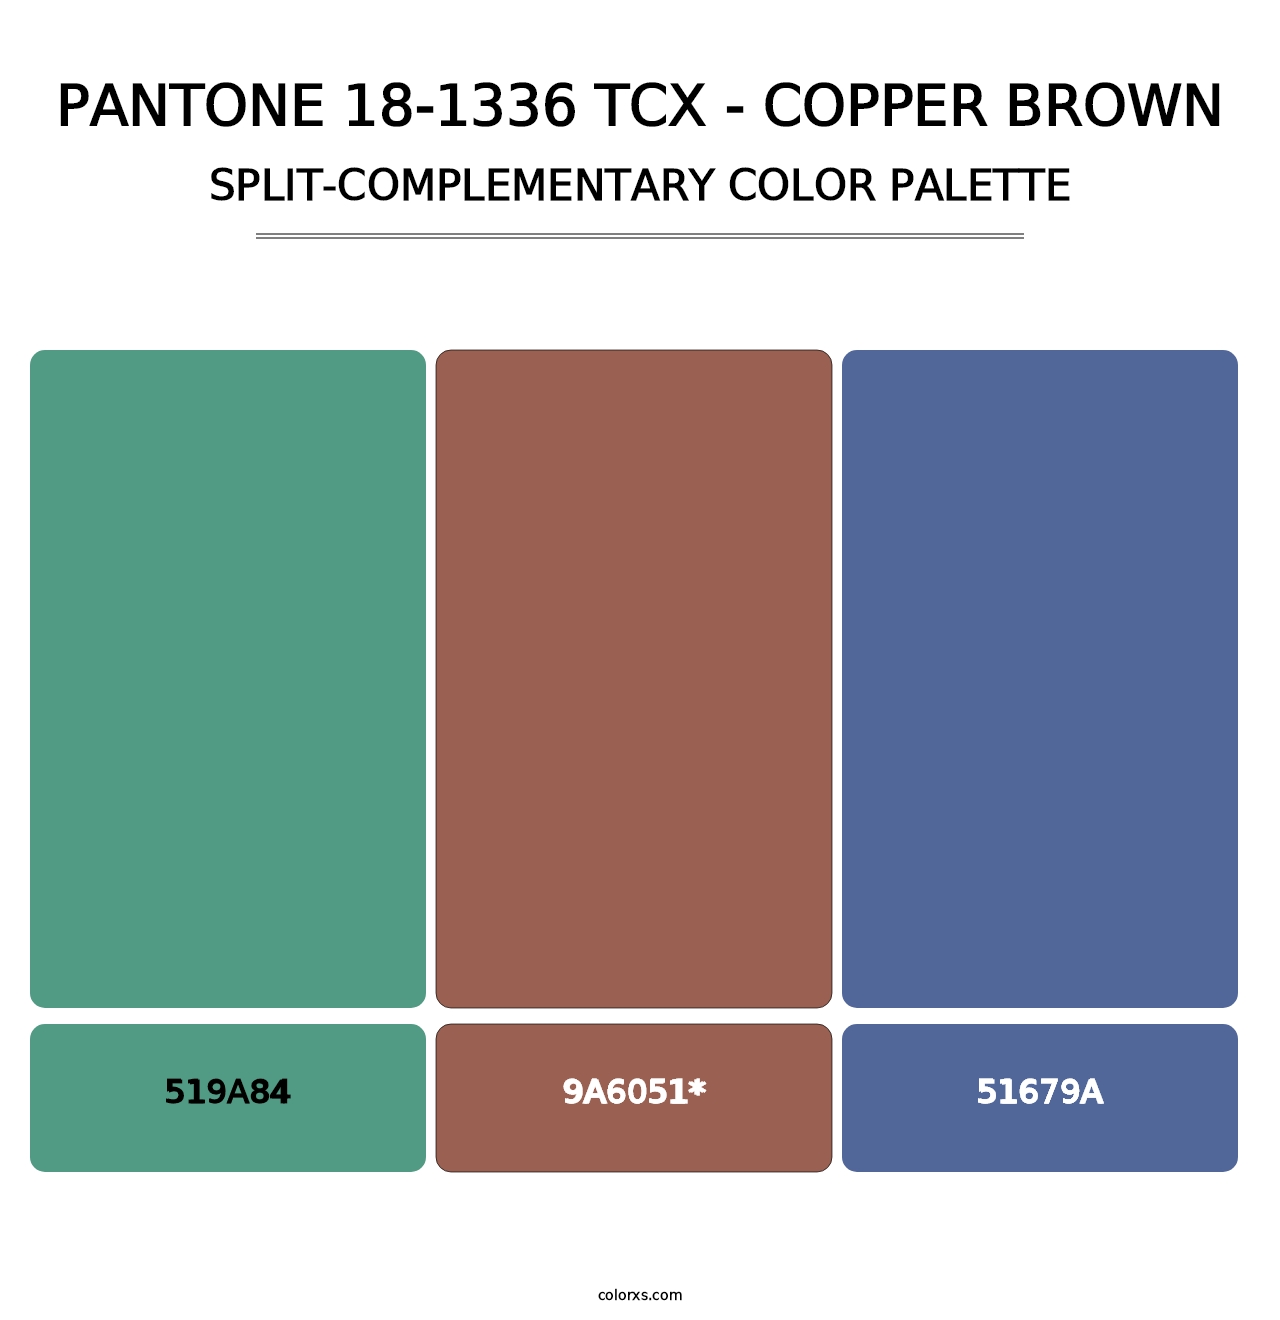 PANTONE 18-1336 TCX - Copper Brown - Split-Complementary Color Palette